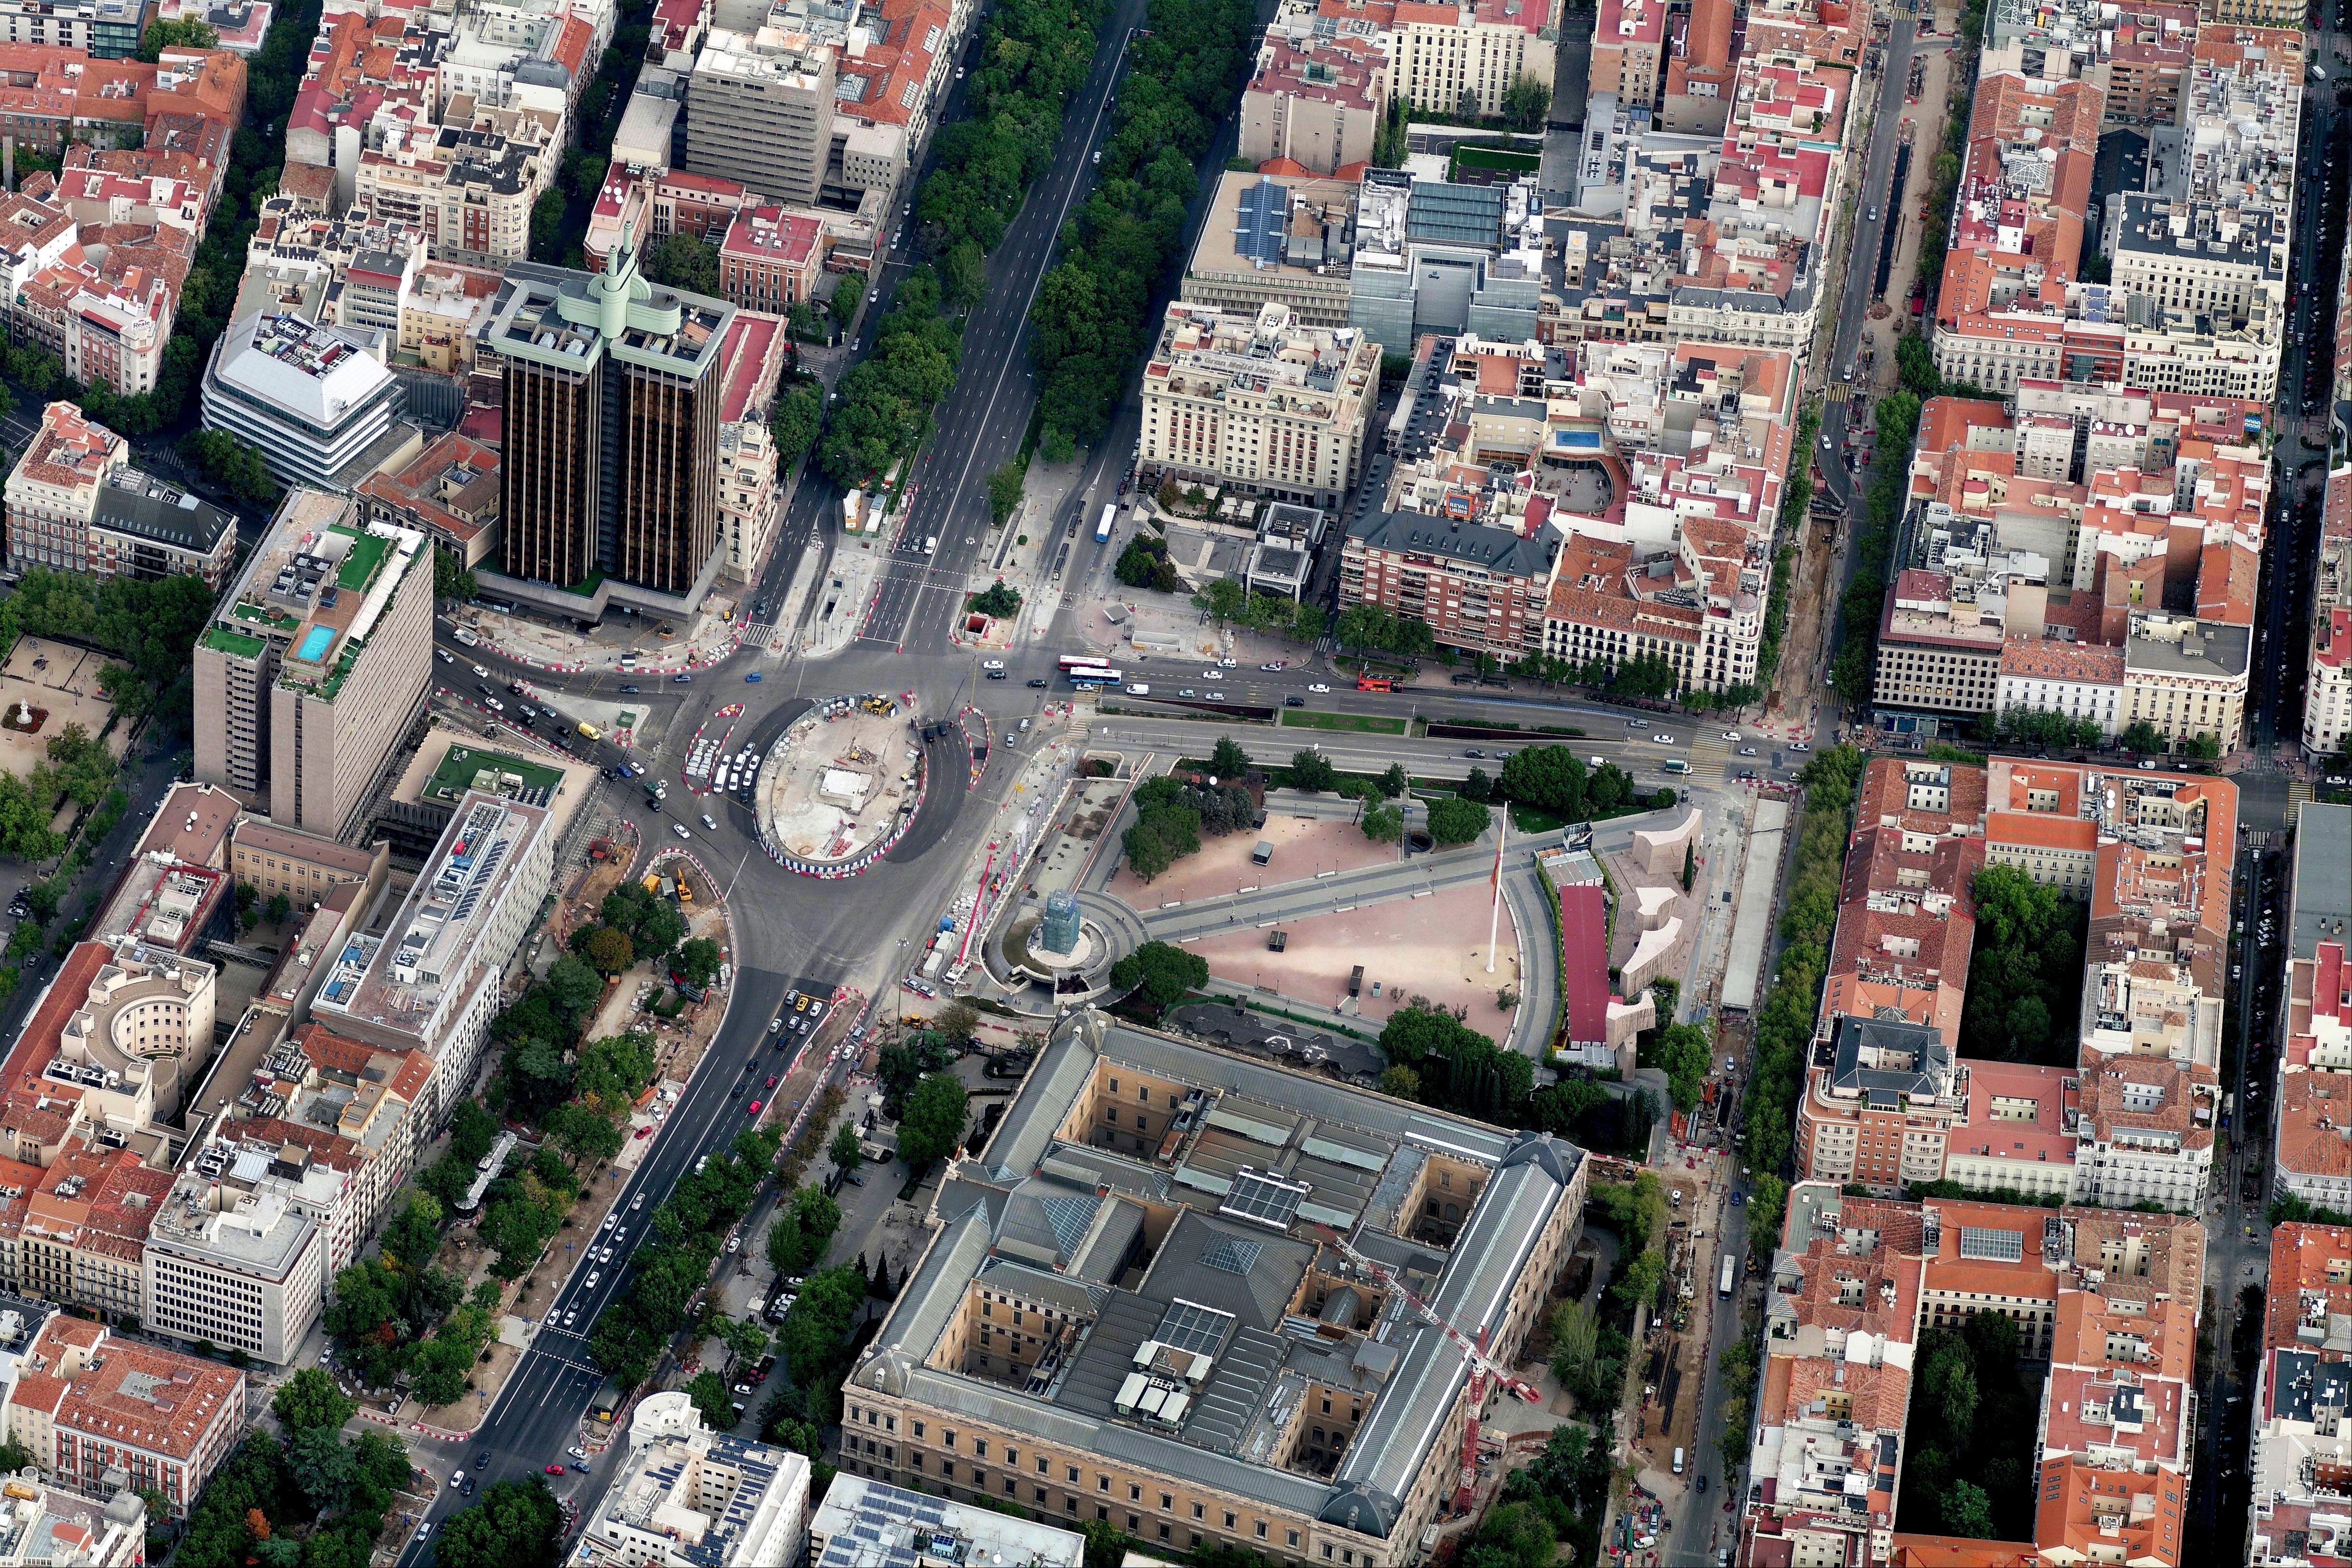 Vista aérea de la Plaza de Colón.